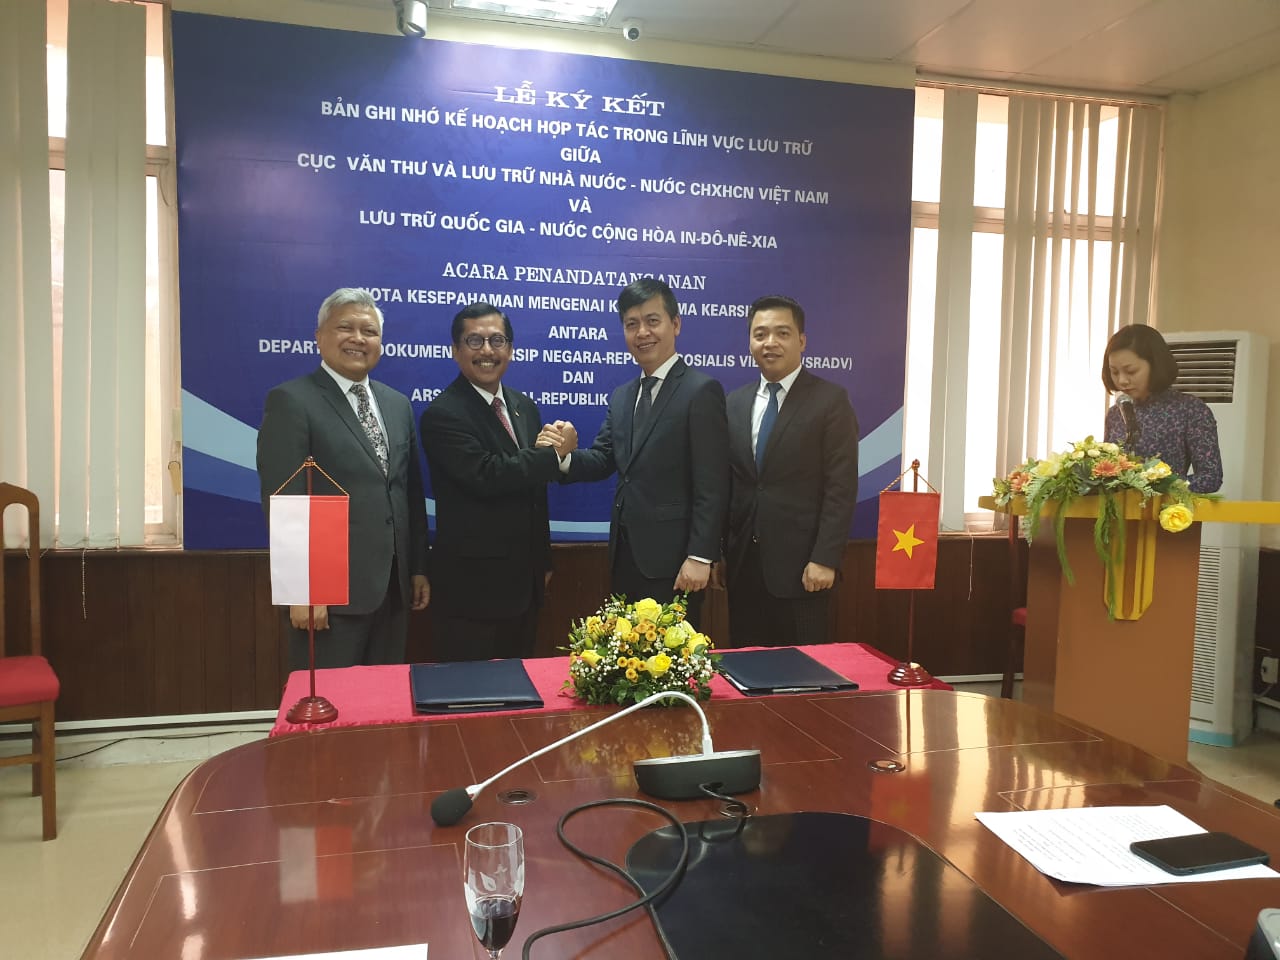 ANRI melakukan penandatanganan MoU dengan the State Records and Archives Department of Vietnam